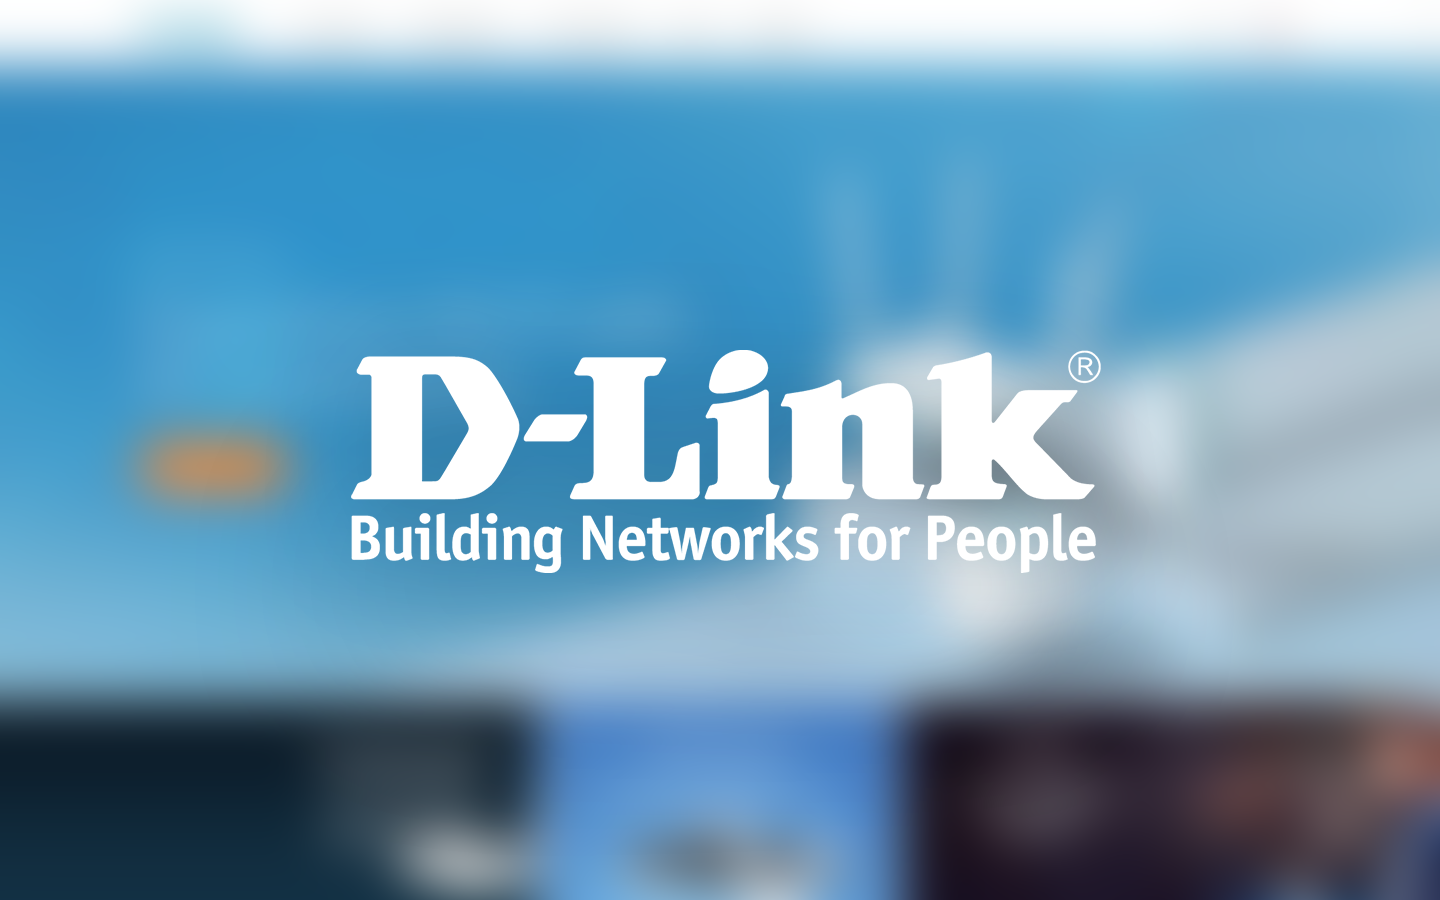 D-Link製のNASに深刻な脆弱性、バックドアと任意のコマンドを実行される可能性あり 92,000台以上に影響か